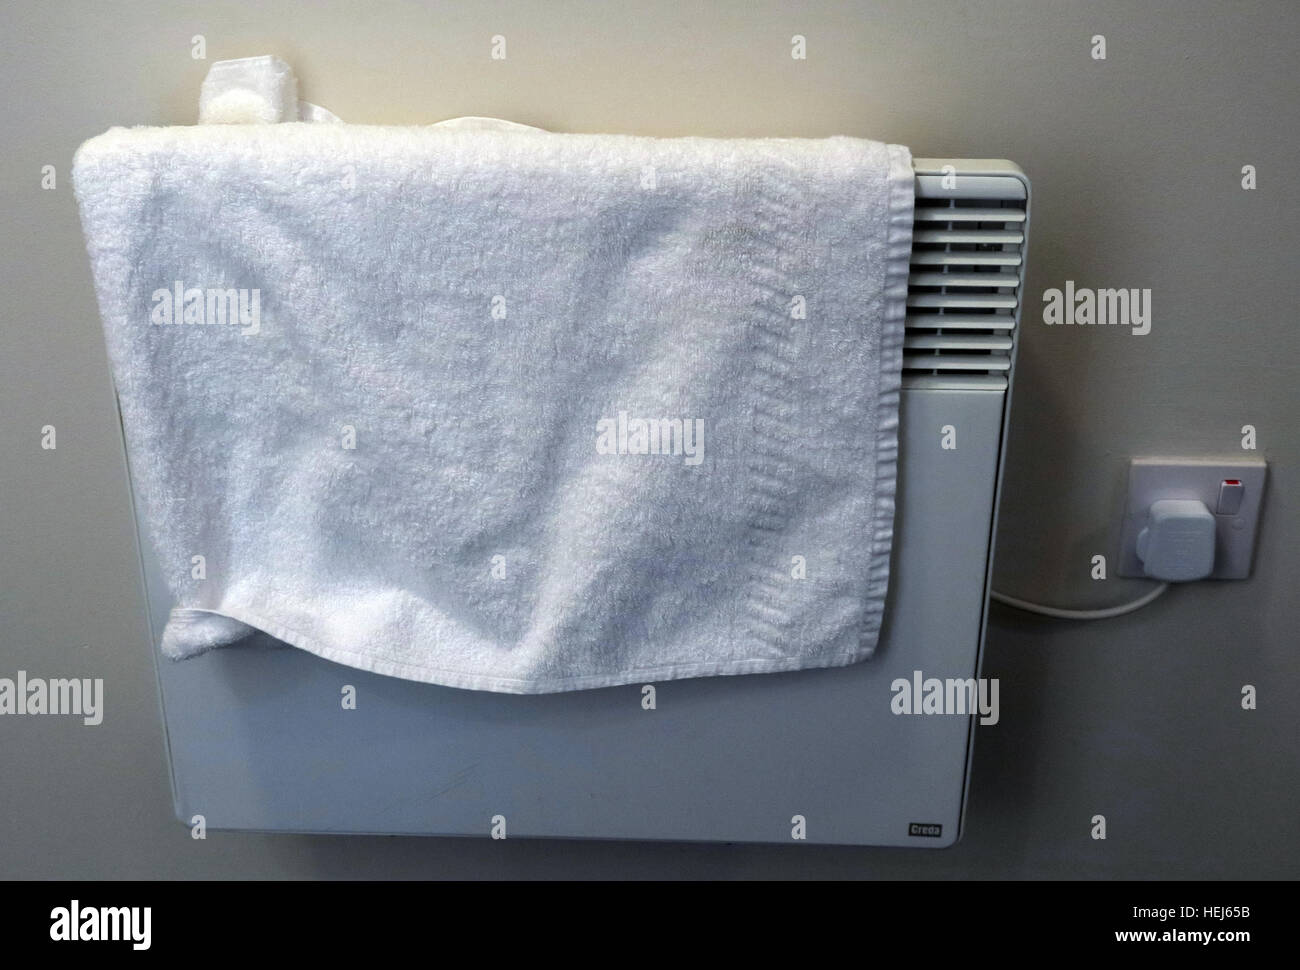 Asciugando asciugamani o vestiti su riscaldatori elettrici a convezione, pericolo di incendio Foto Stock